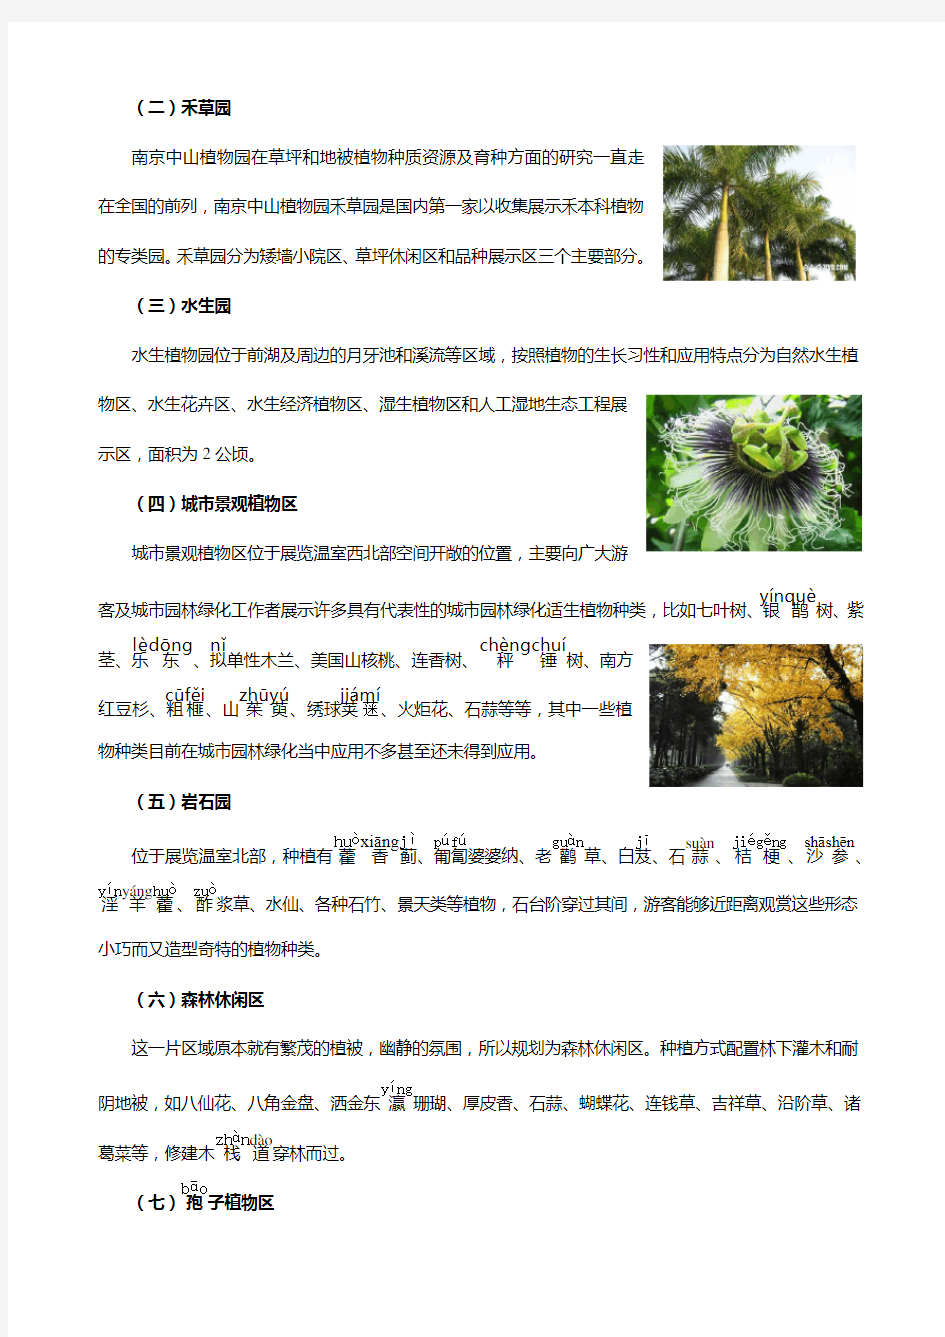 (完整版)南京中山植物园